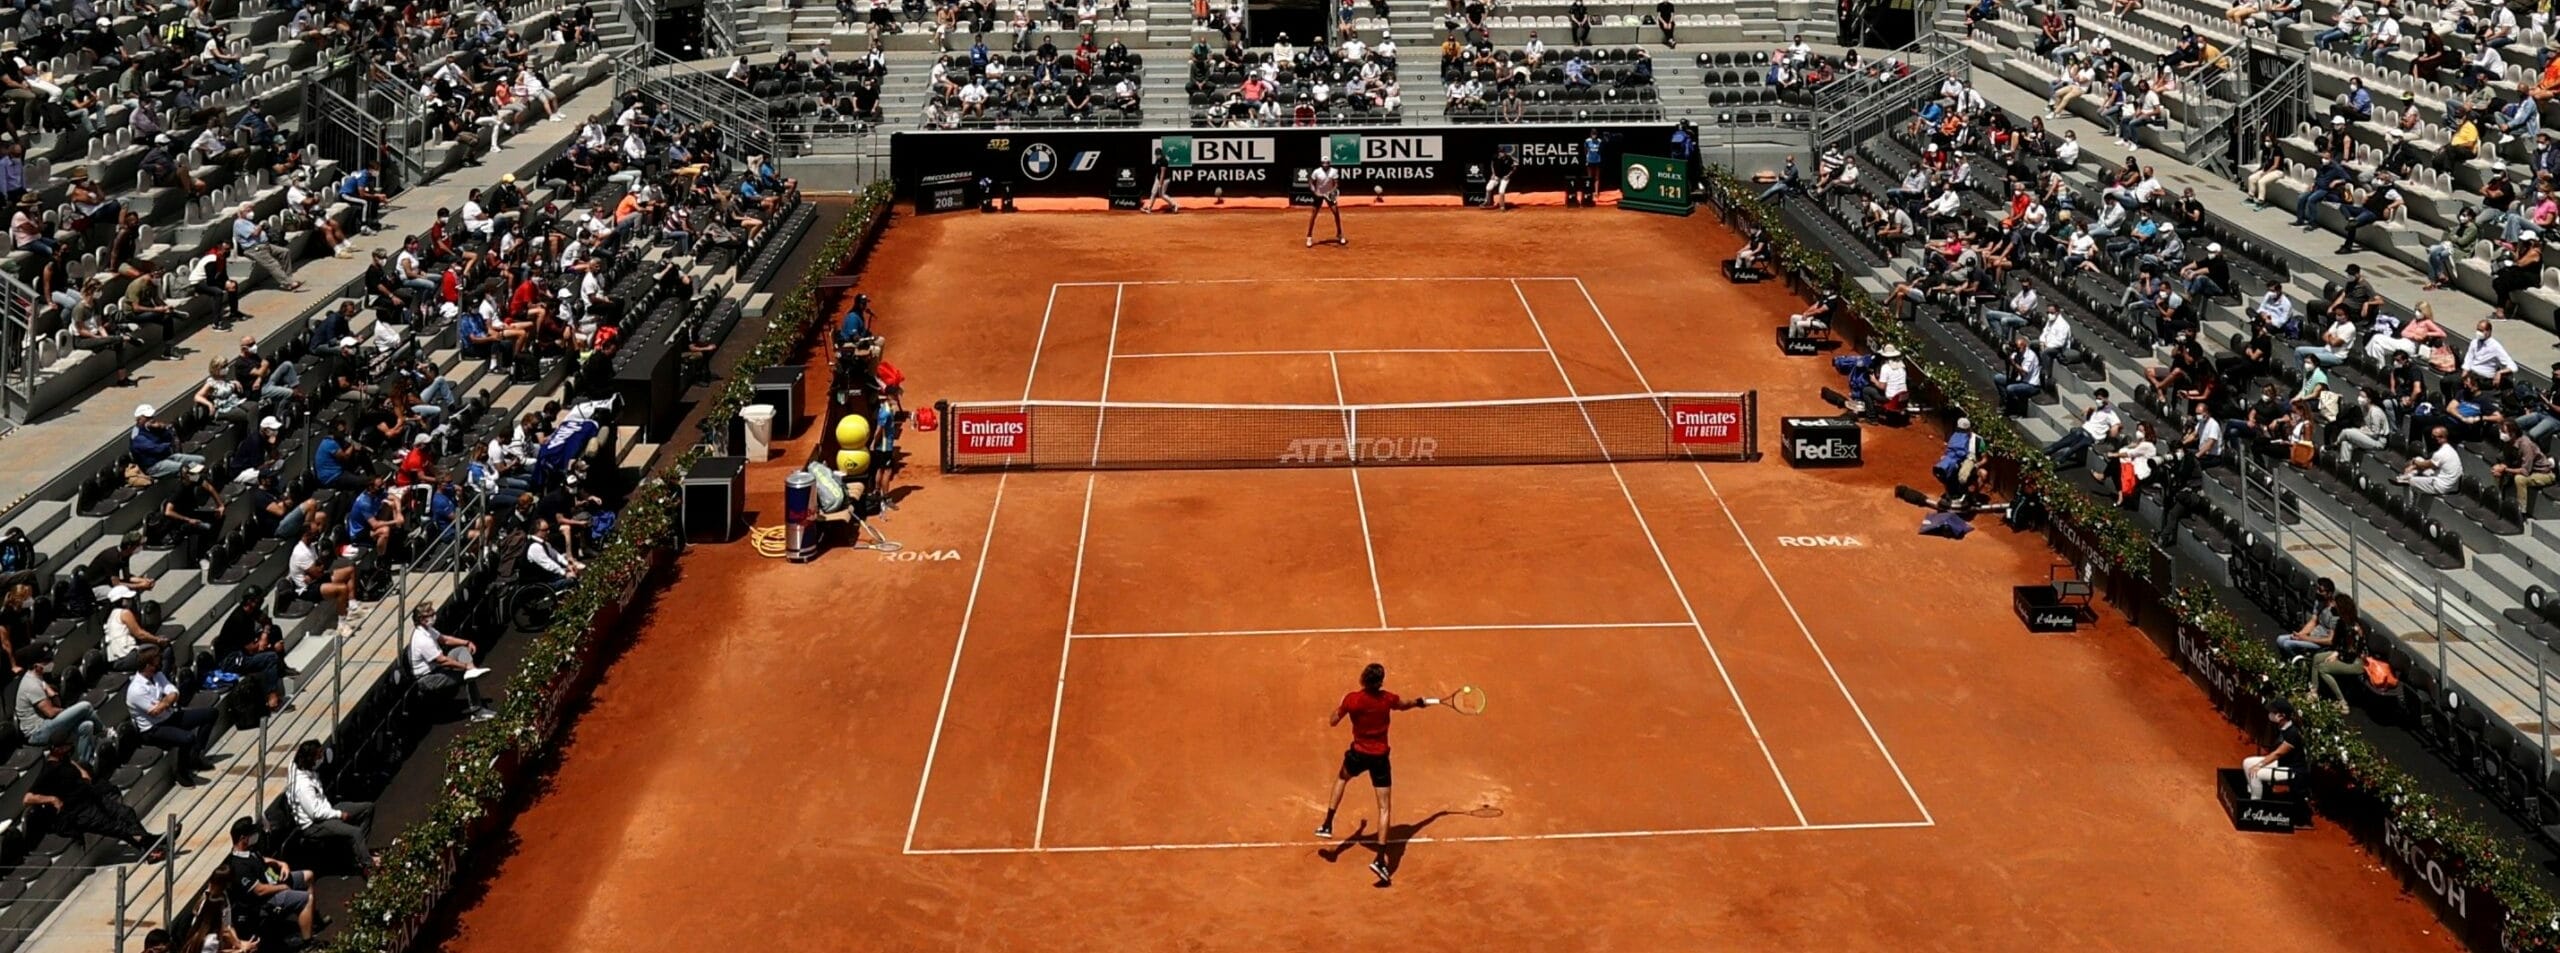 Pronostici ATP Roma: Sonego-Rublev per un altro miracolo, Zverev-Nadal e Djokovic-Tsitsi da non perdere